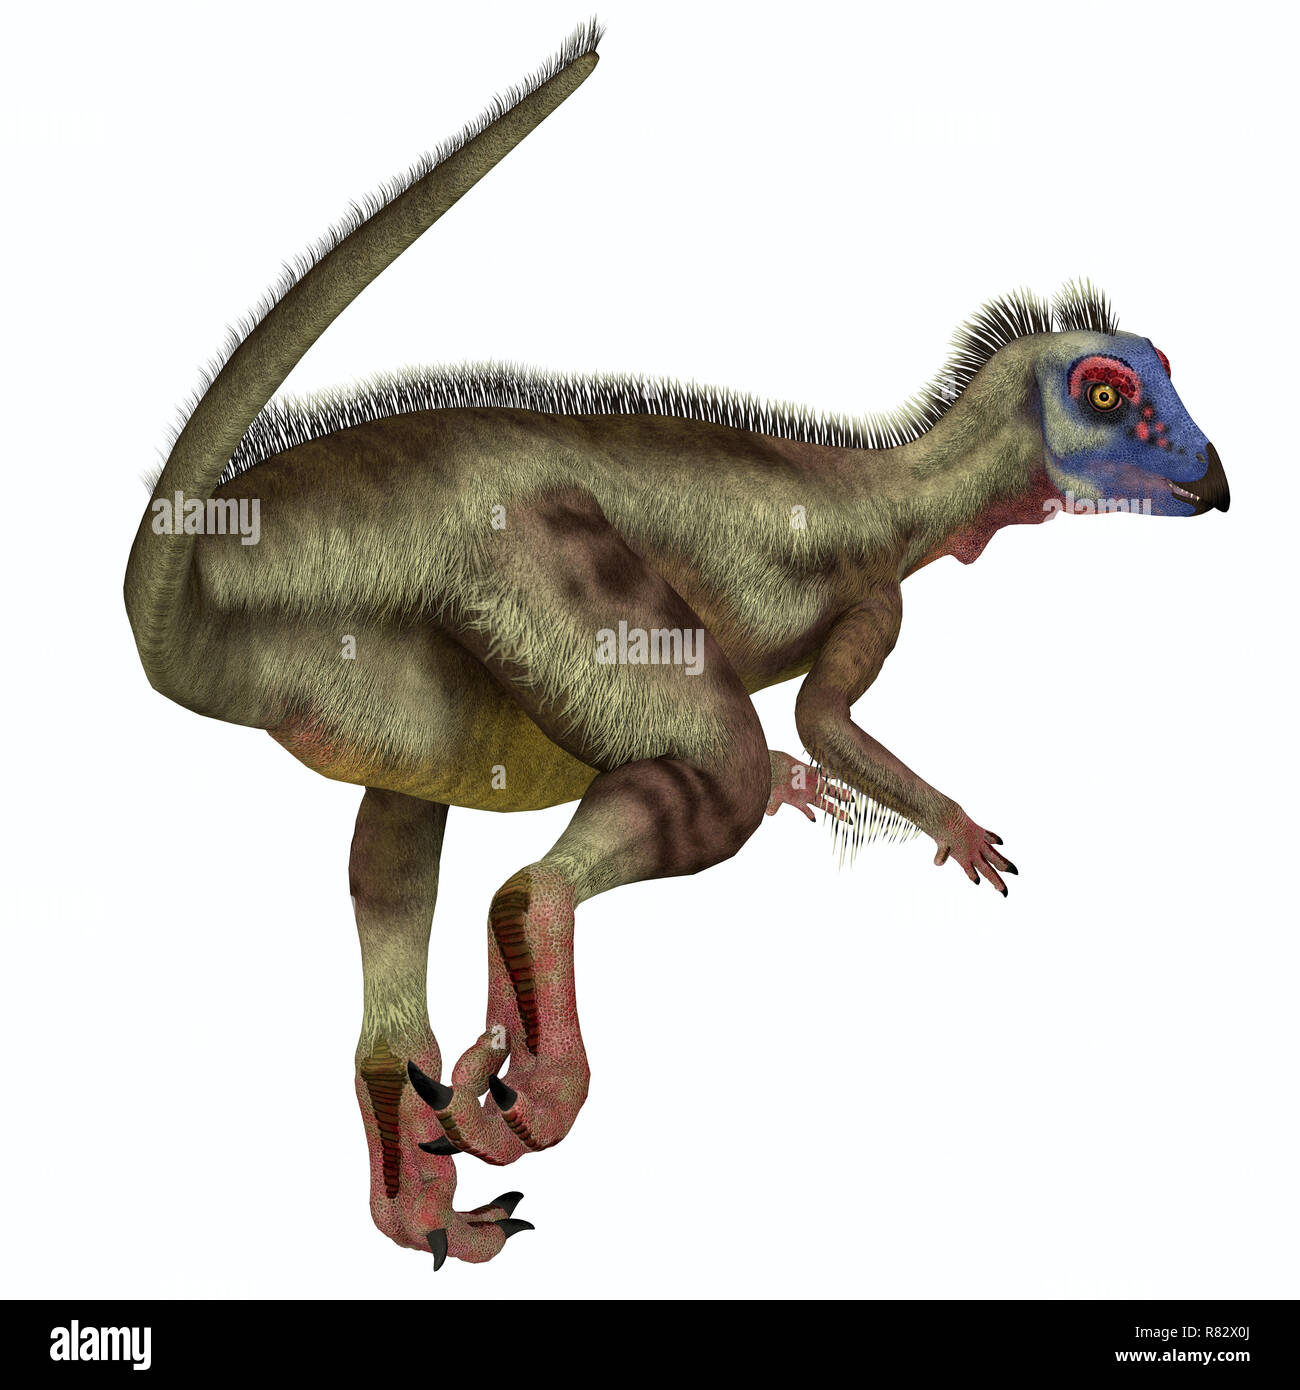 Dinosaurier hypsilophodon Schwanz - Hypsilophodon war ein Allesfresser ornithopoden Dinosaurier, die in England während der Kreidezeit lebten. Stockfoto